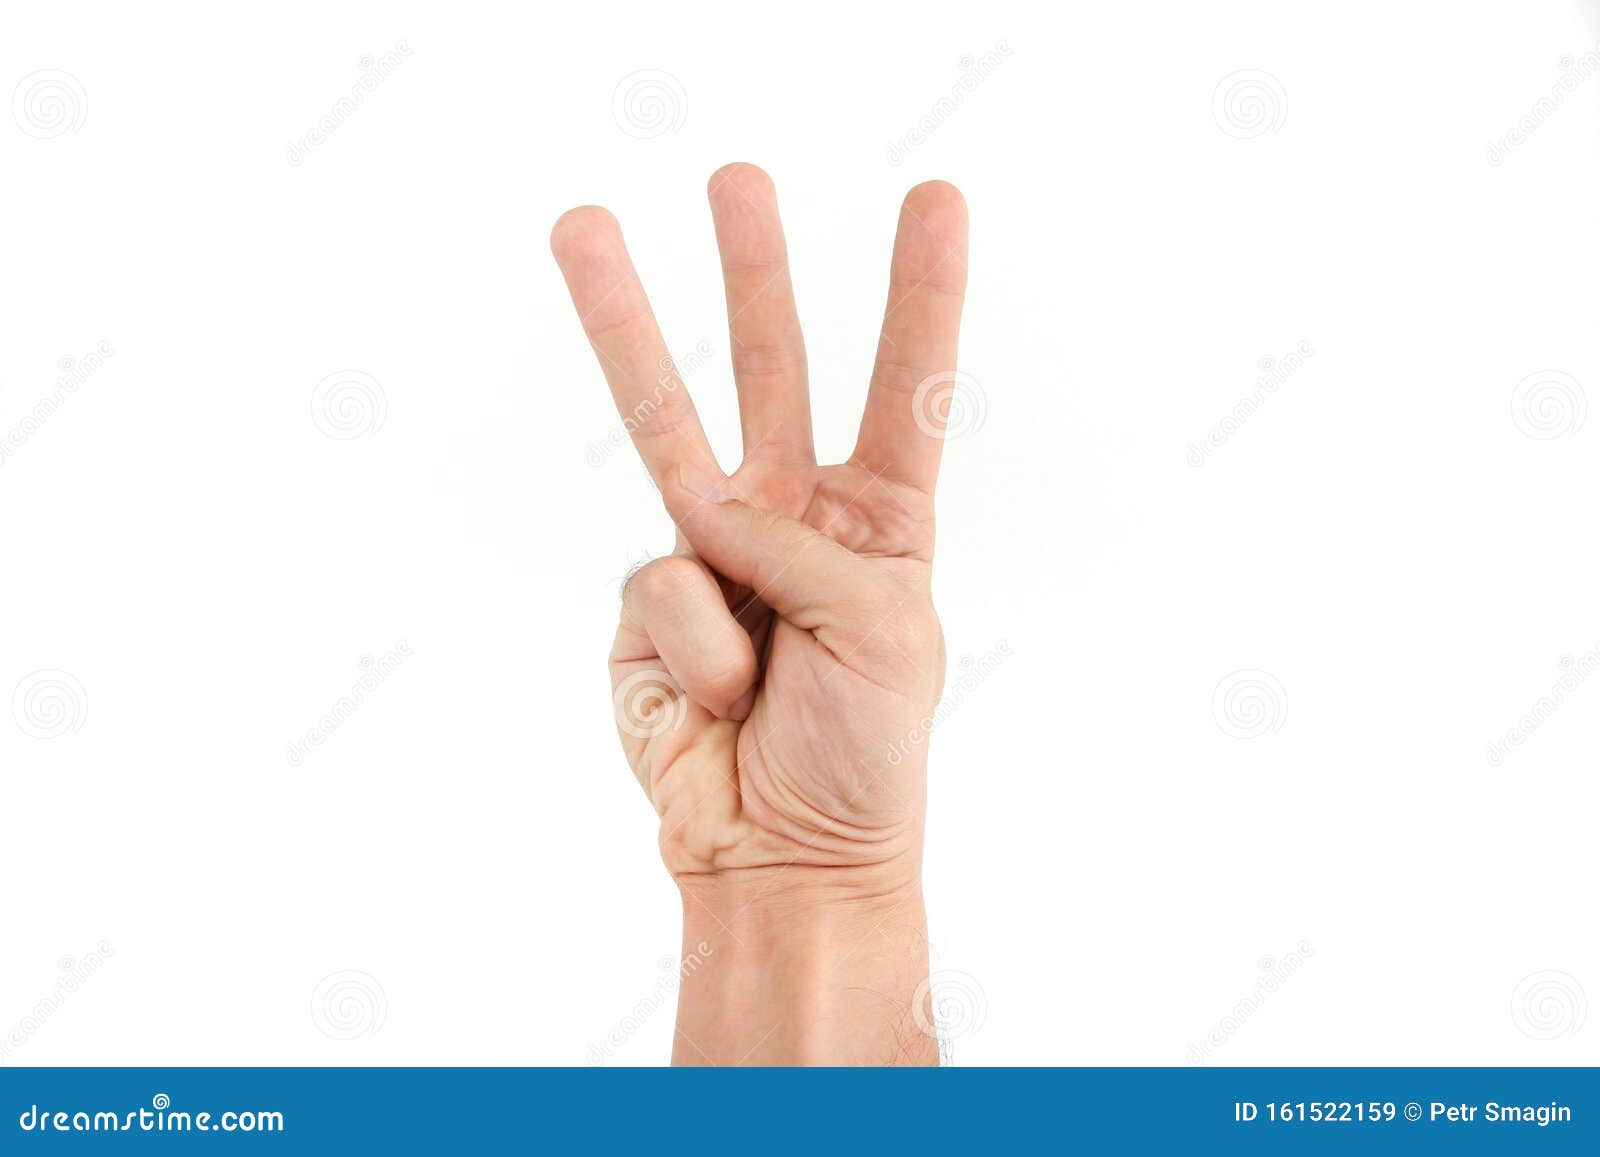 Показывать три пальца. Показывает три пальца. Человек показывает три пальца. Три пальца для печати синем цветом. Жест третьим будешь.